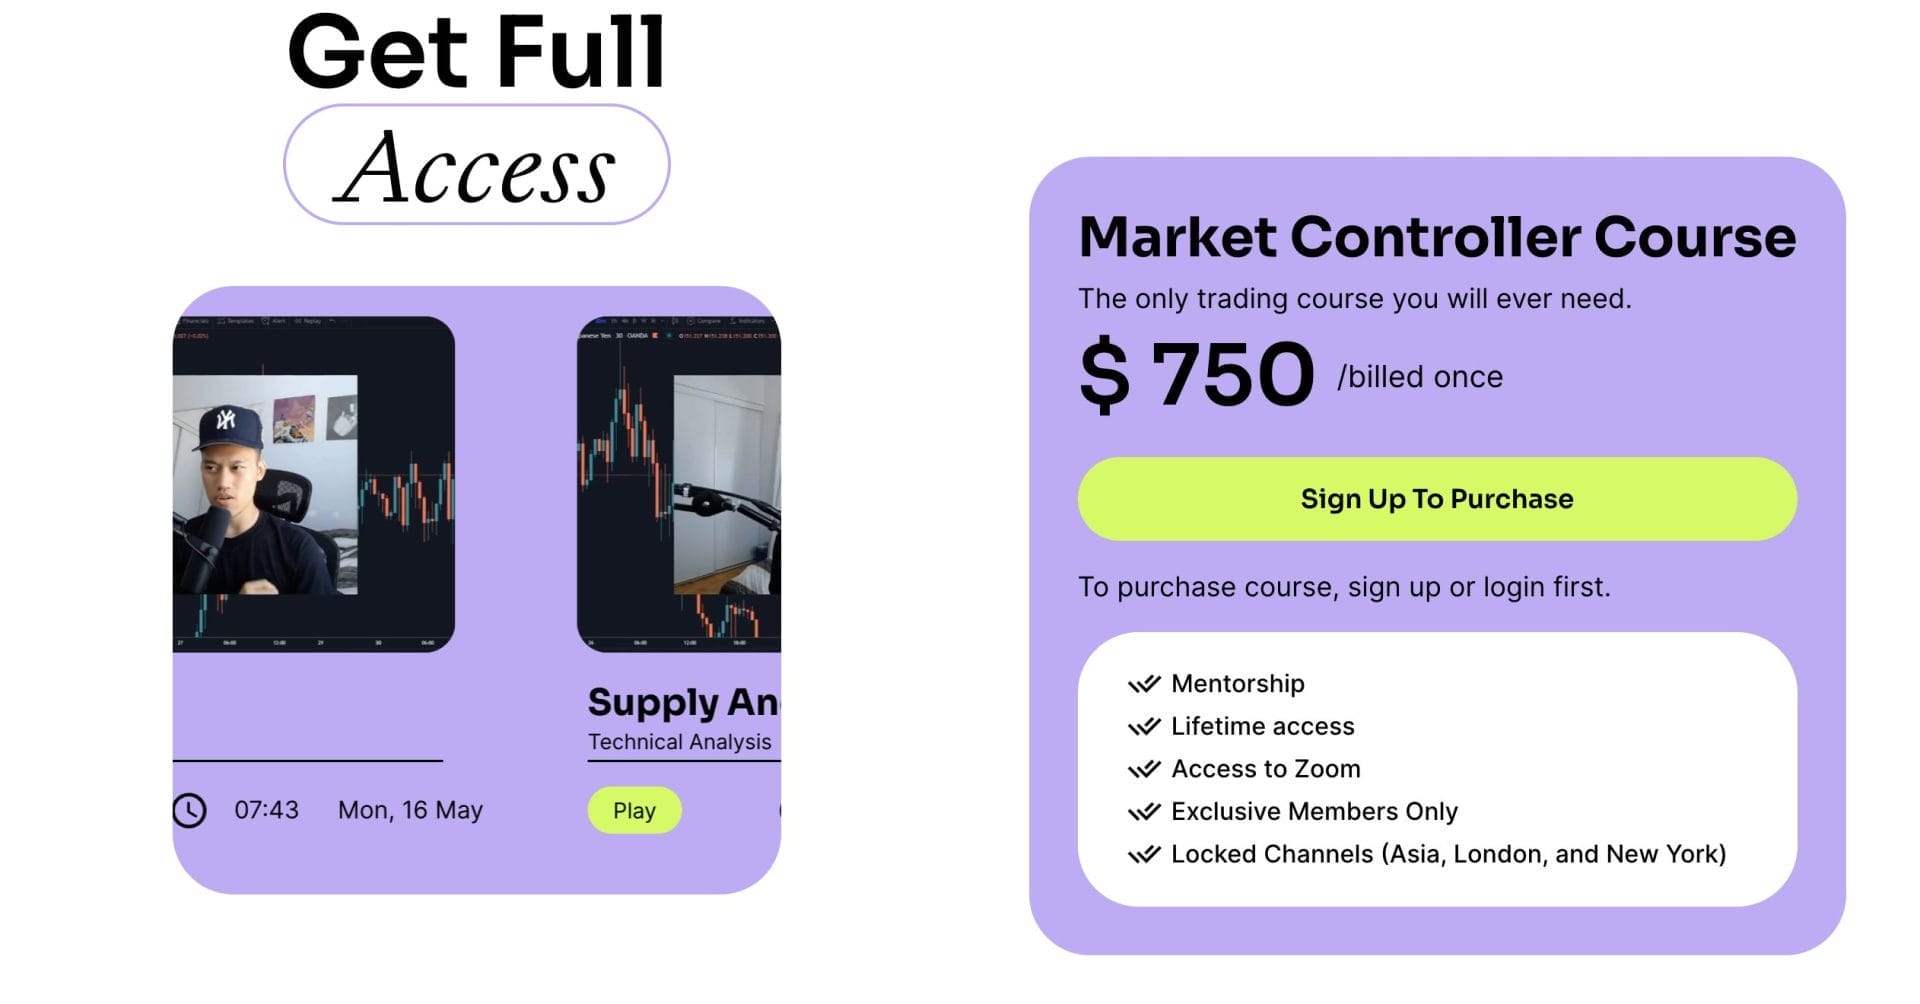 ControllerFX – Market Controller Course 2023